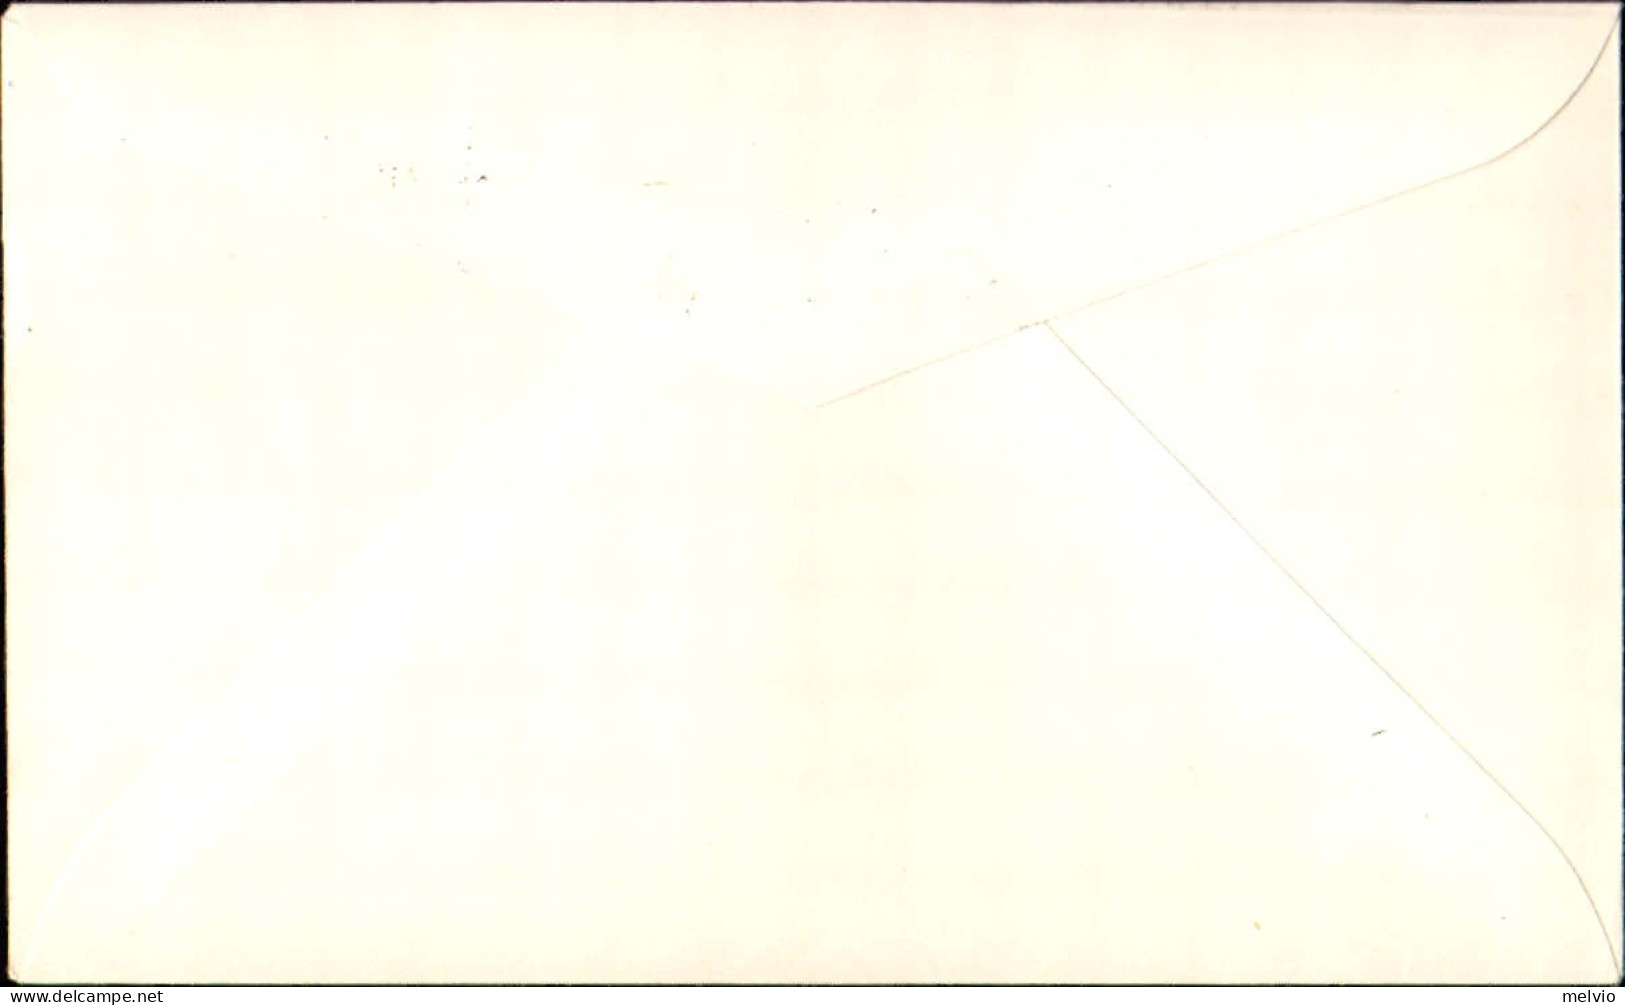 1970-lettera Illustrata Affrancata L.25 Giornata Del Francobollo E Annullo Speci - Luftpost